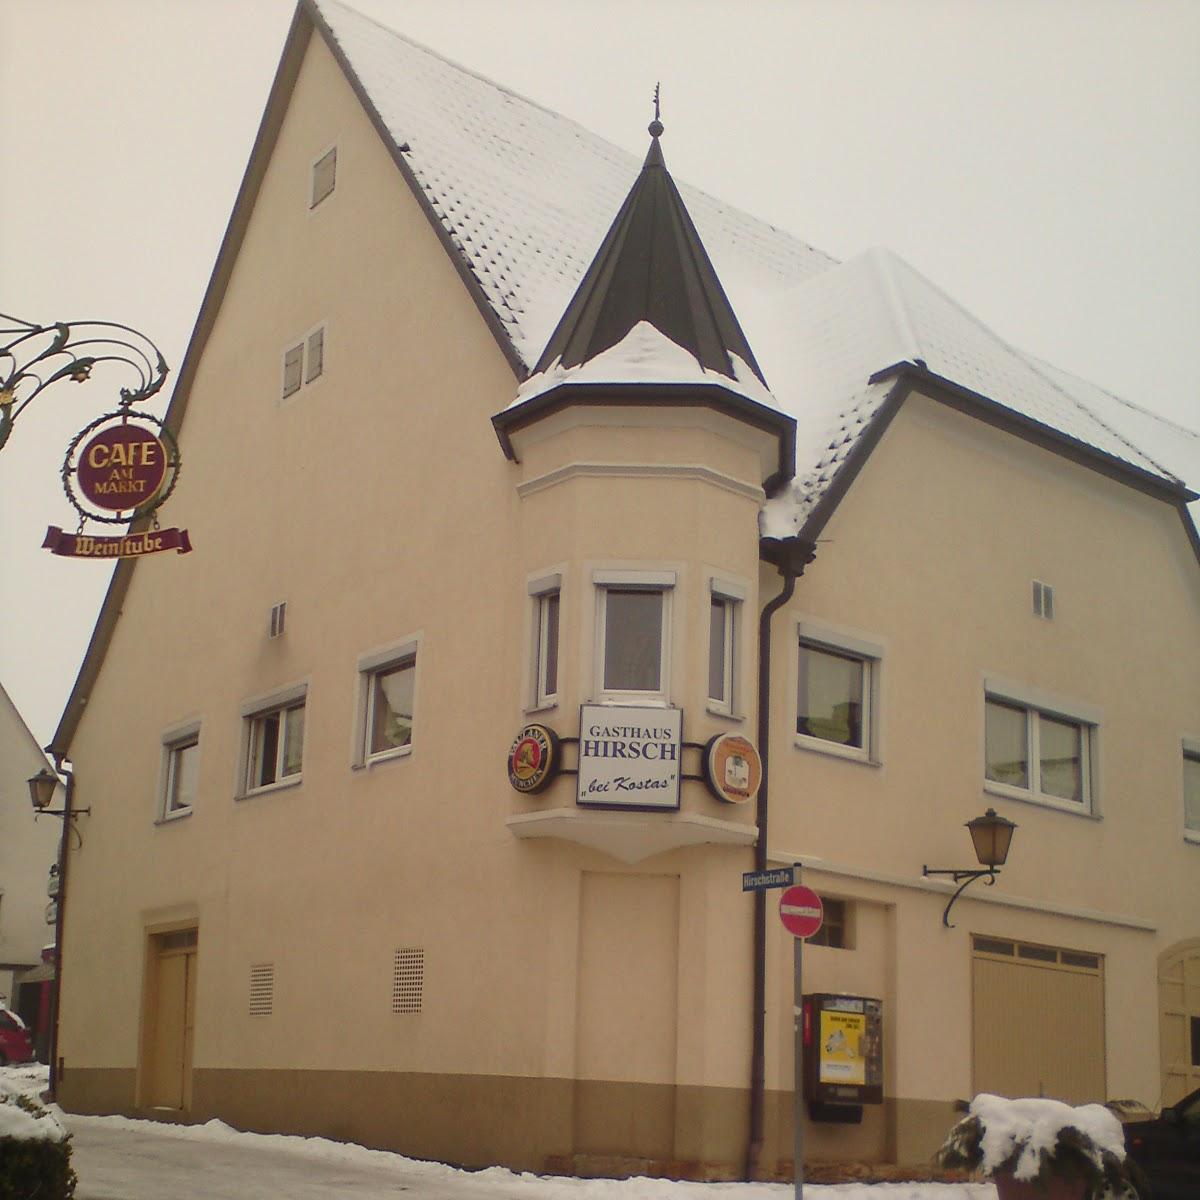 Restaurant "Gasthaus" in  Ohmden